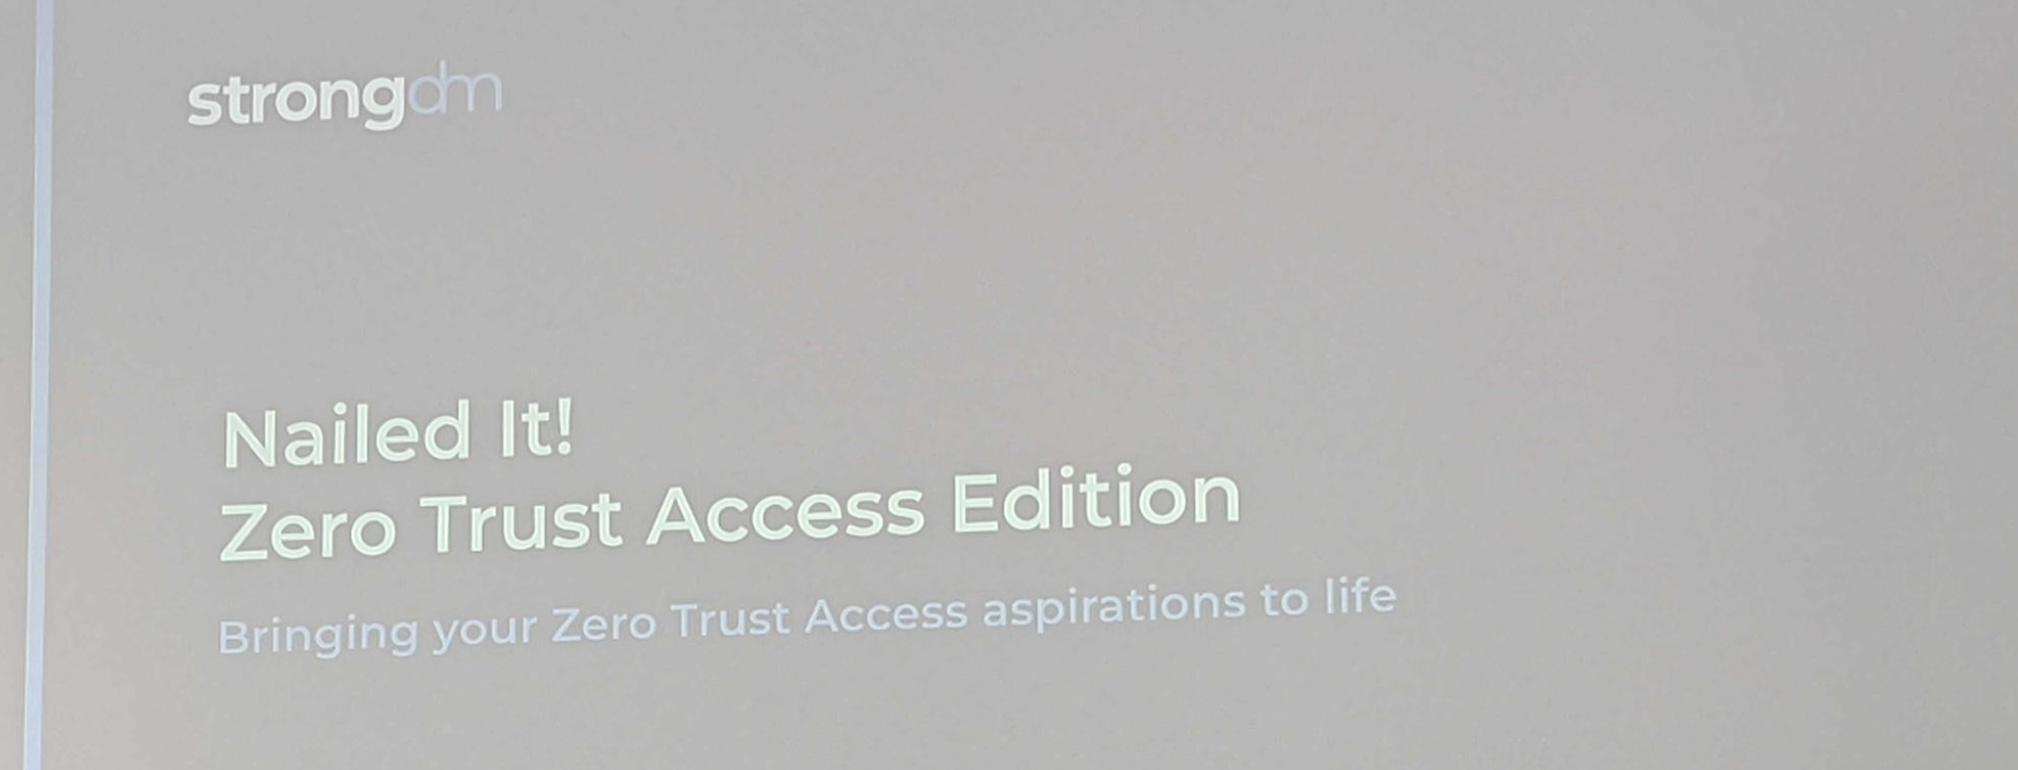 タイトル画面_Nailed It! Zero Trust Access Edition